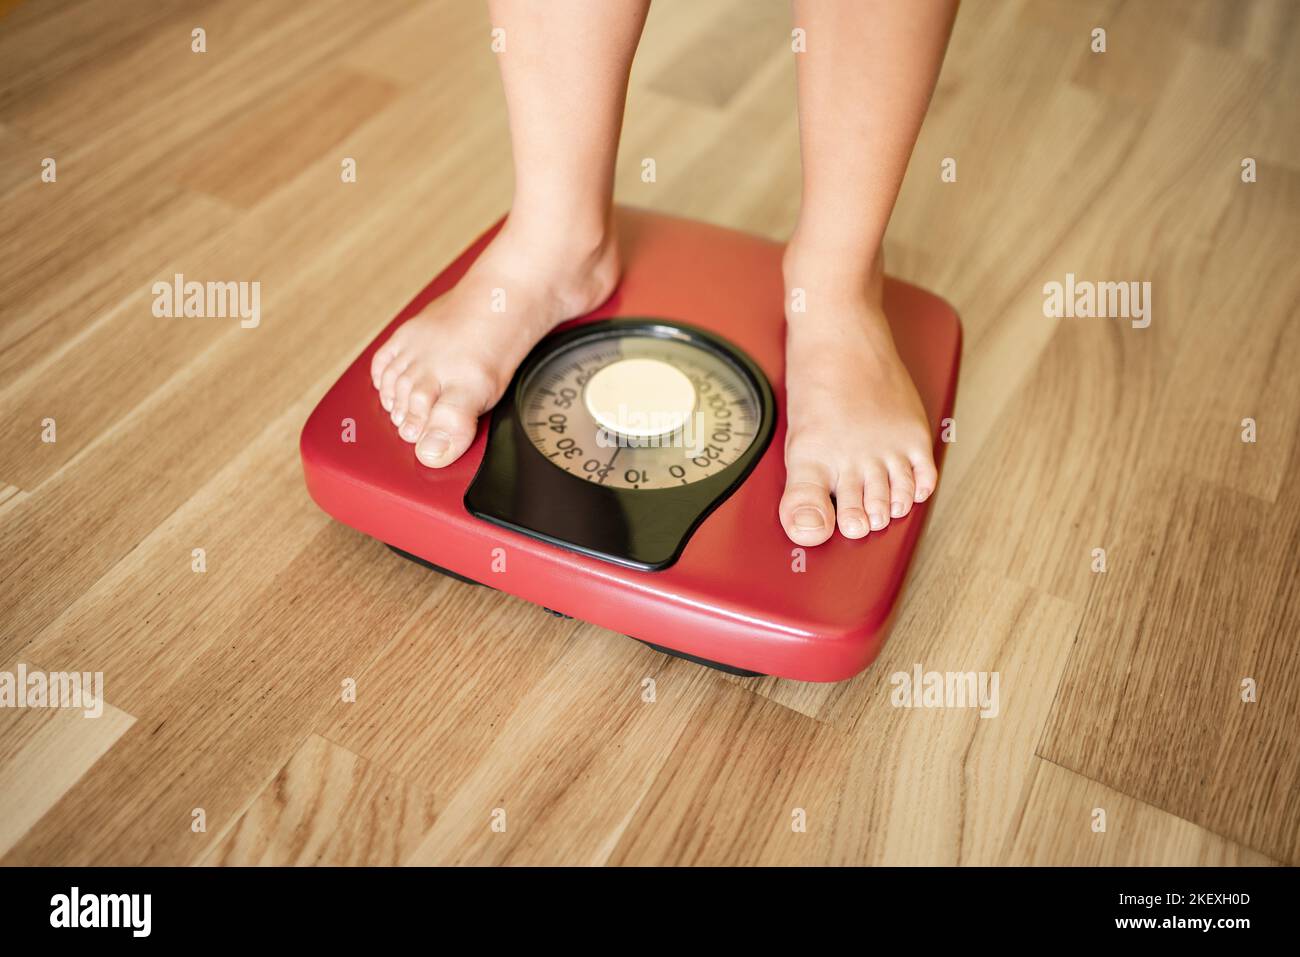 Primer plano del niño mide el peso en una báscula. Foto de stock